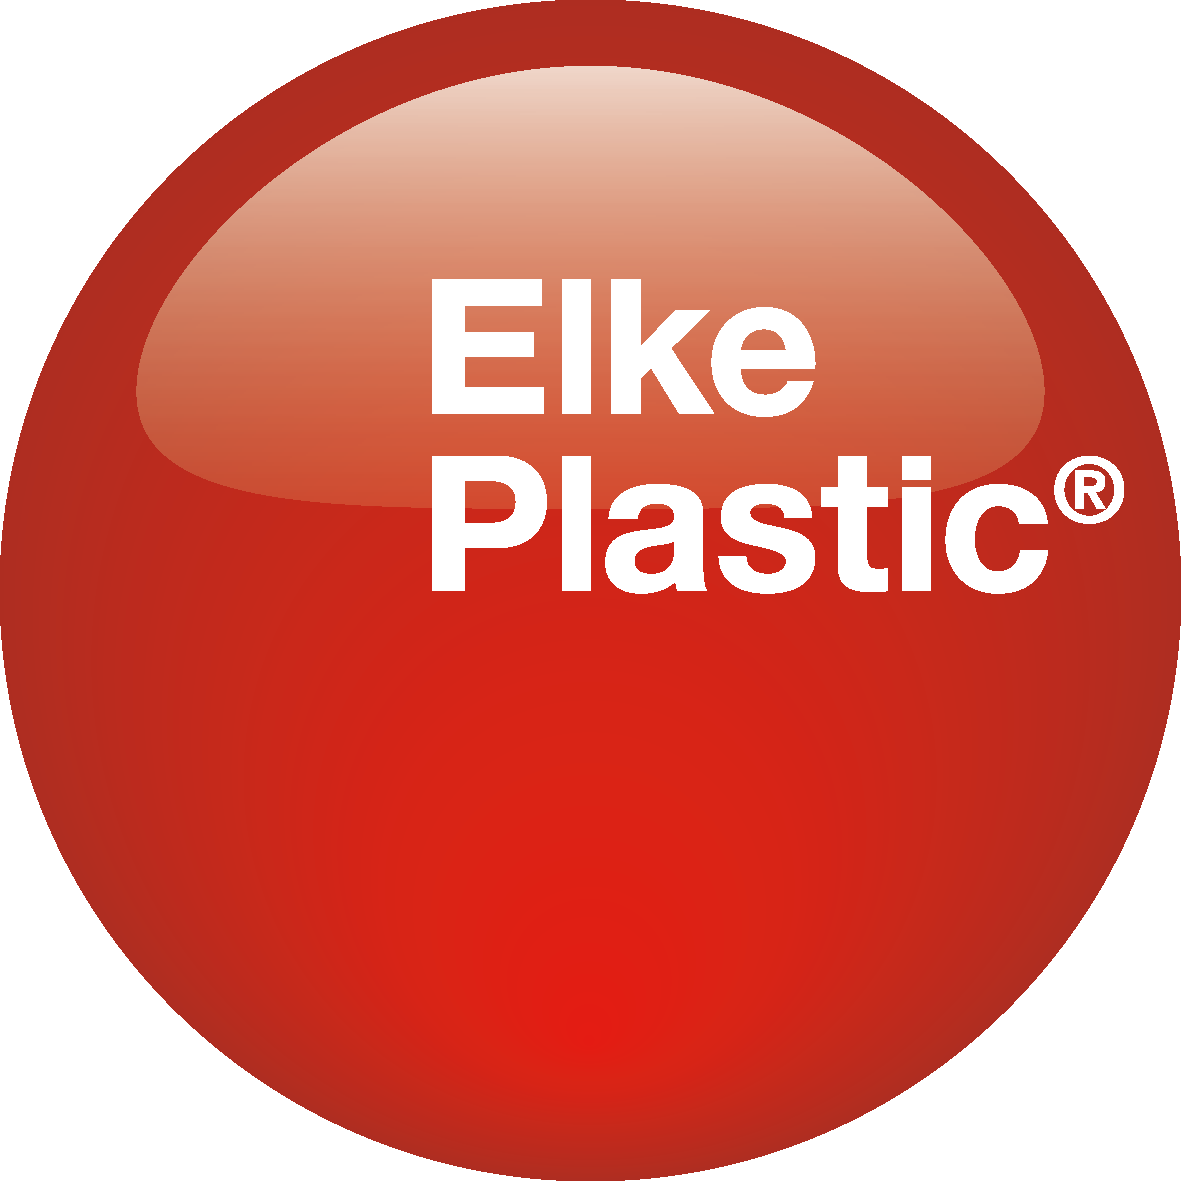 Elke Plastic - Ihr Profi für Folienverpackungen